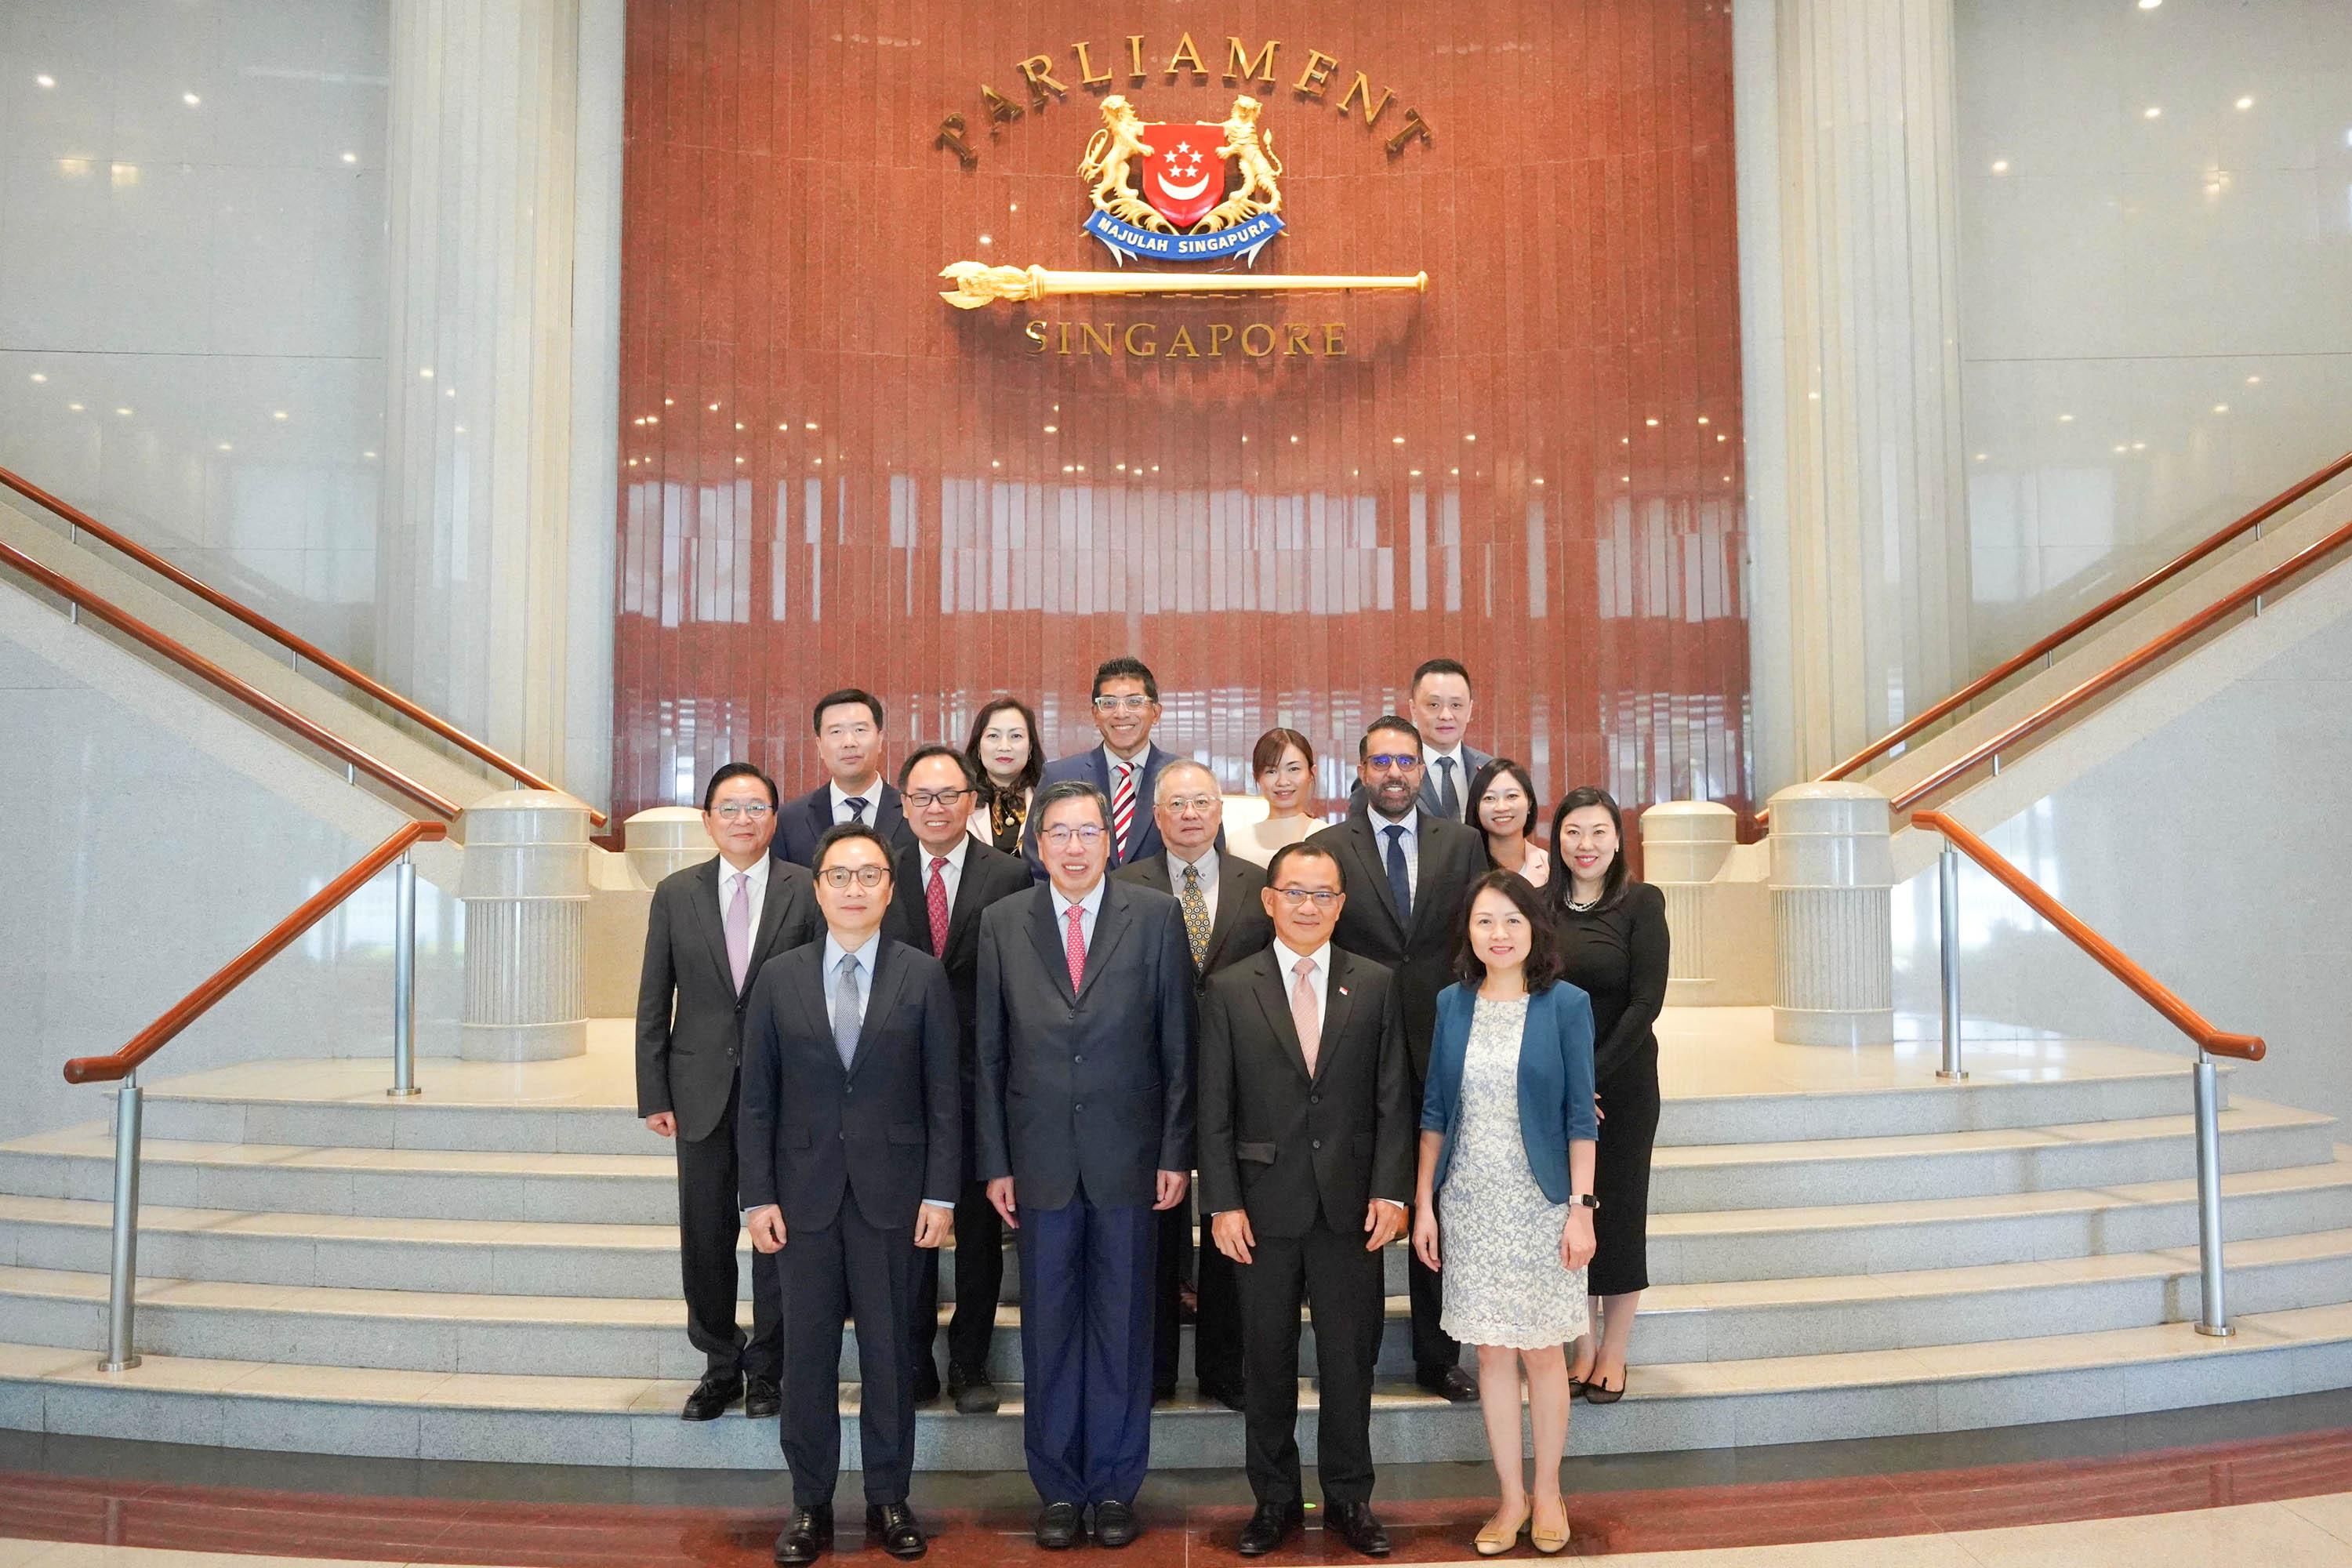 立法会考察团今日（五月十七日）展开在新加坡的职务考察。图示立法会主席梁君彦议员（前排左二）和考察团成员与新加坡国会议长谢健平（前排左三）在新加坡国会大厦合照。
